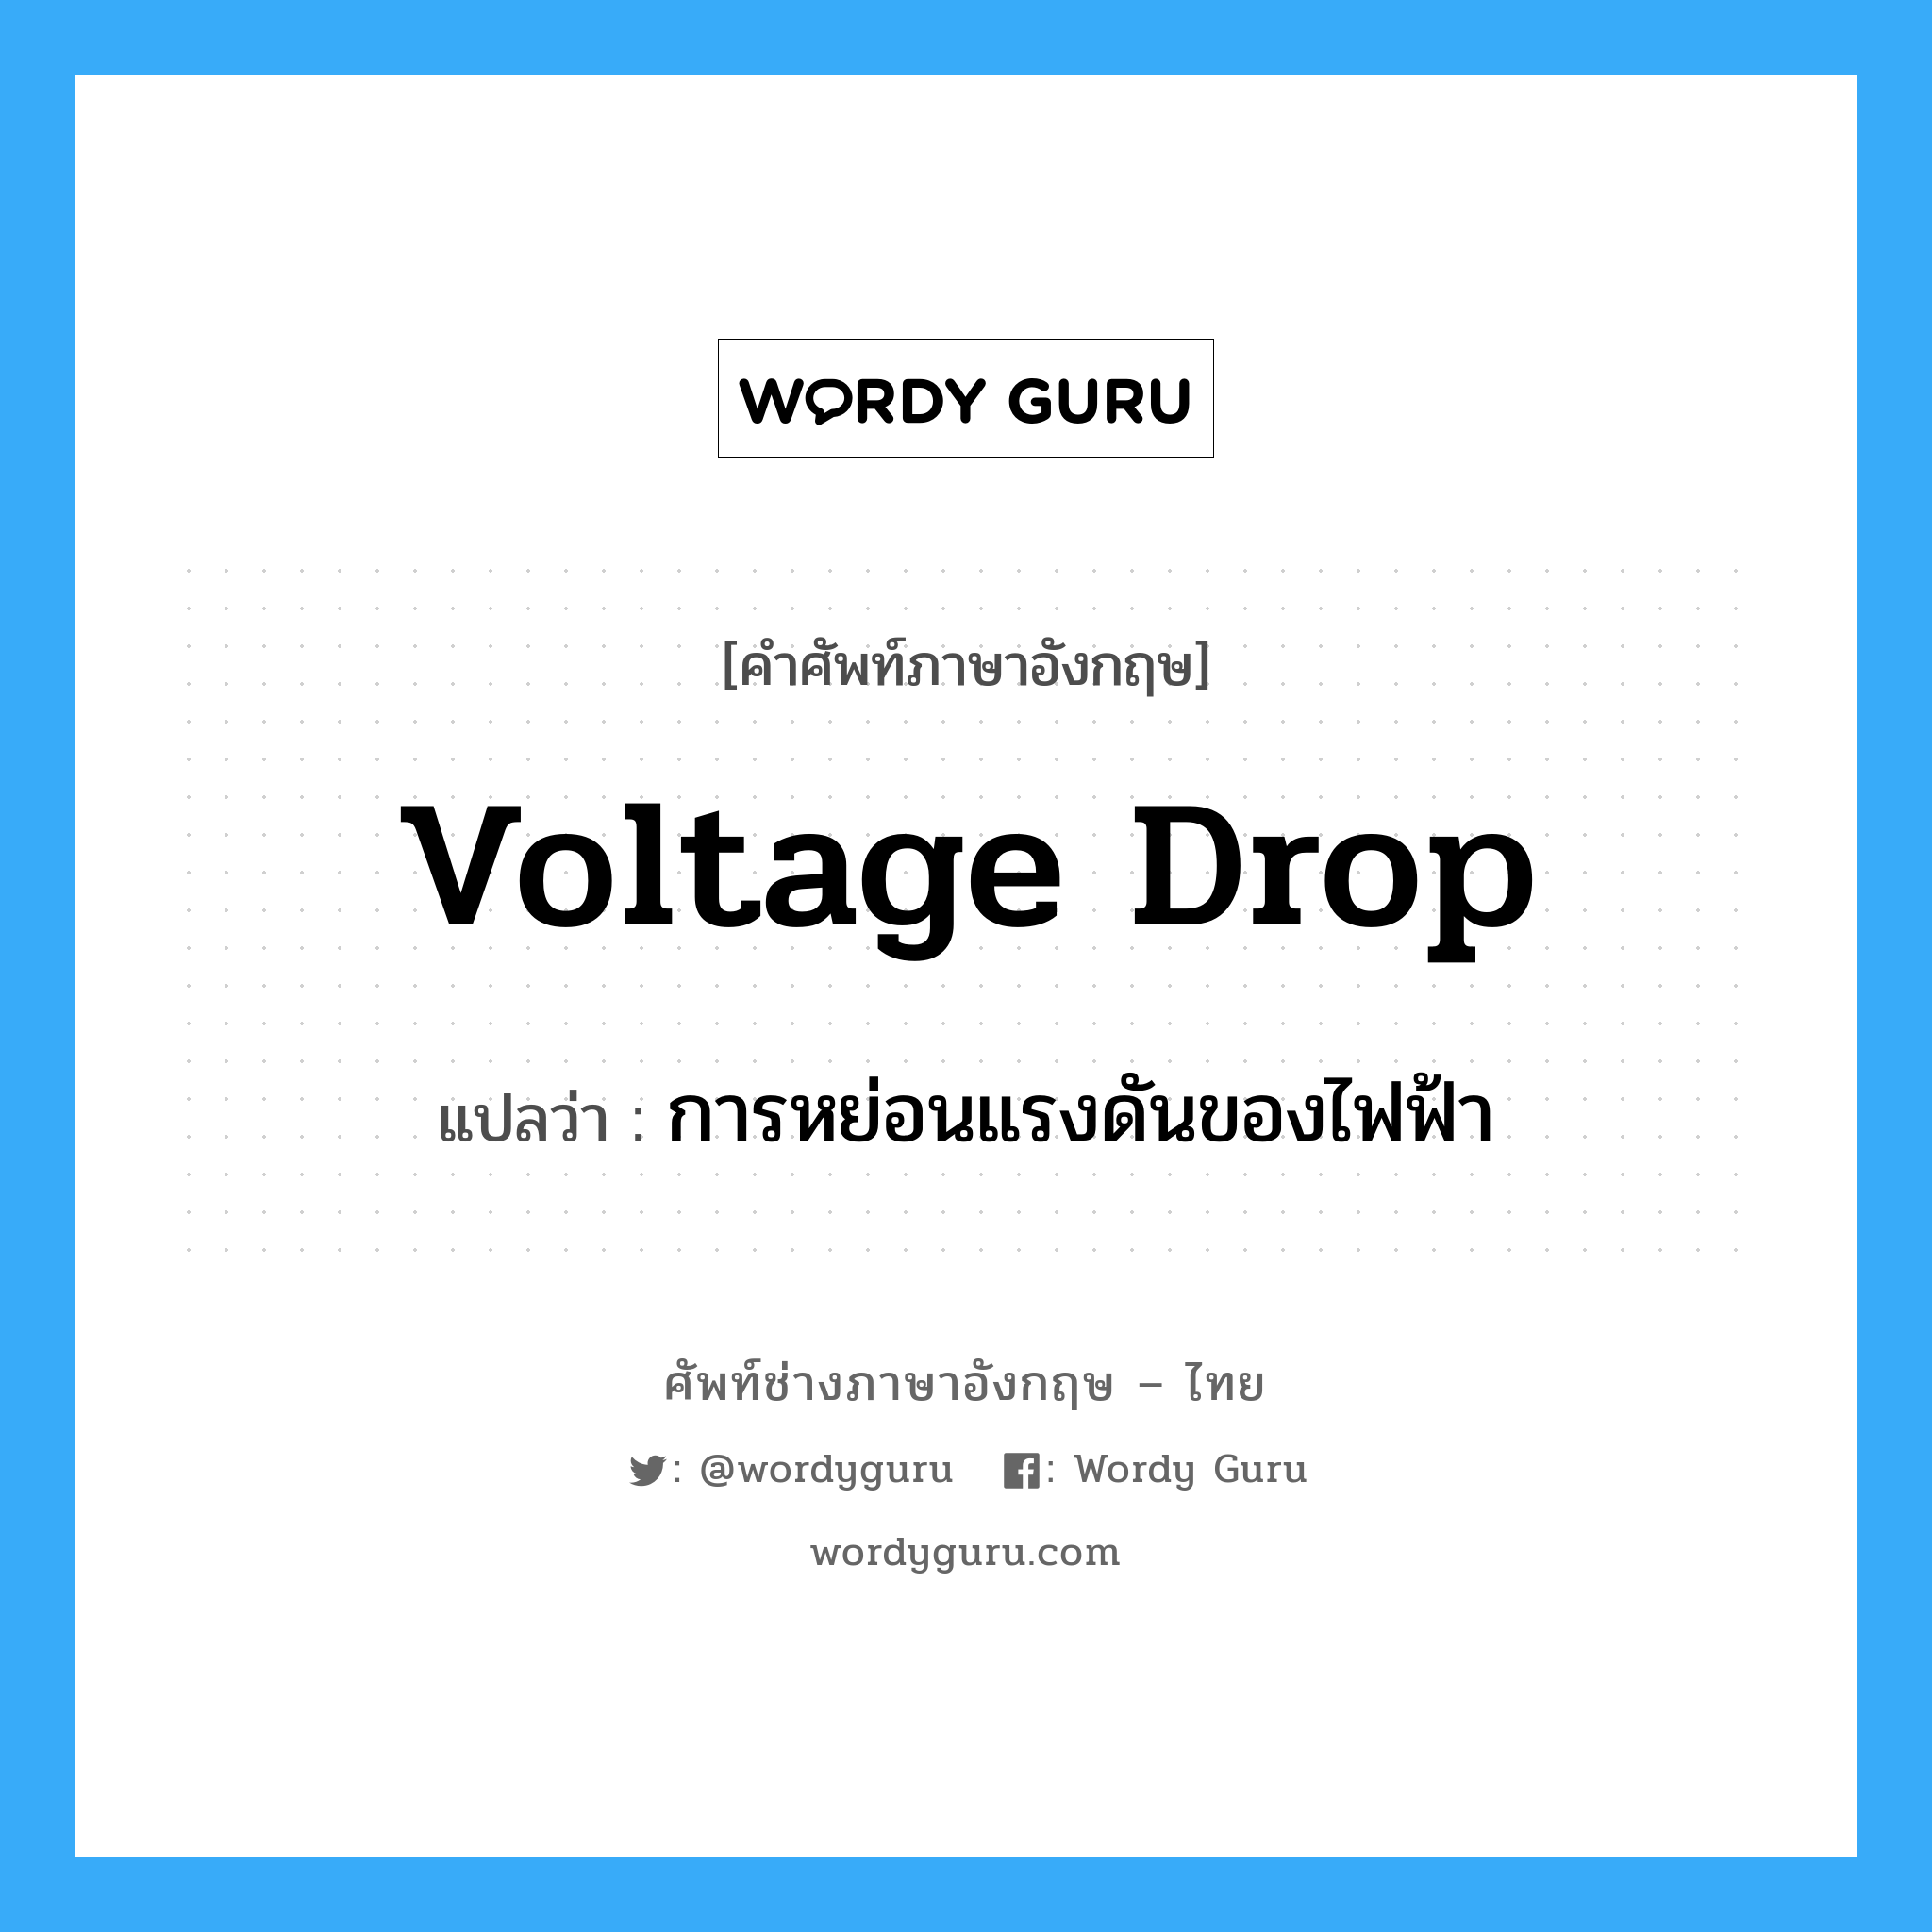 voltage drop แปลว่า?, คำศัพท์ช่างภาษาอังกฤษ - ไทย voltage drop คำศัพท์ภาษาอังกฤษ voltage drop แปลว่า การหย่อนแรงดันของไฟฟ้า